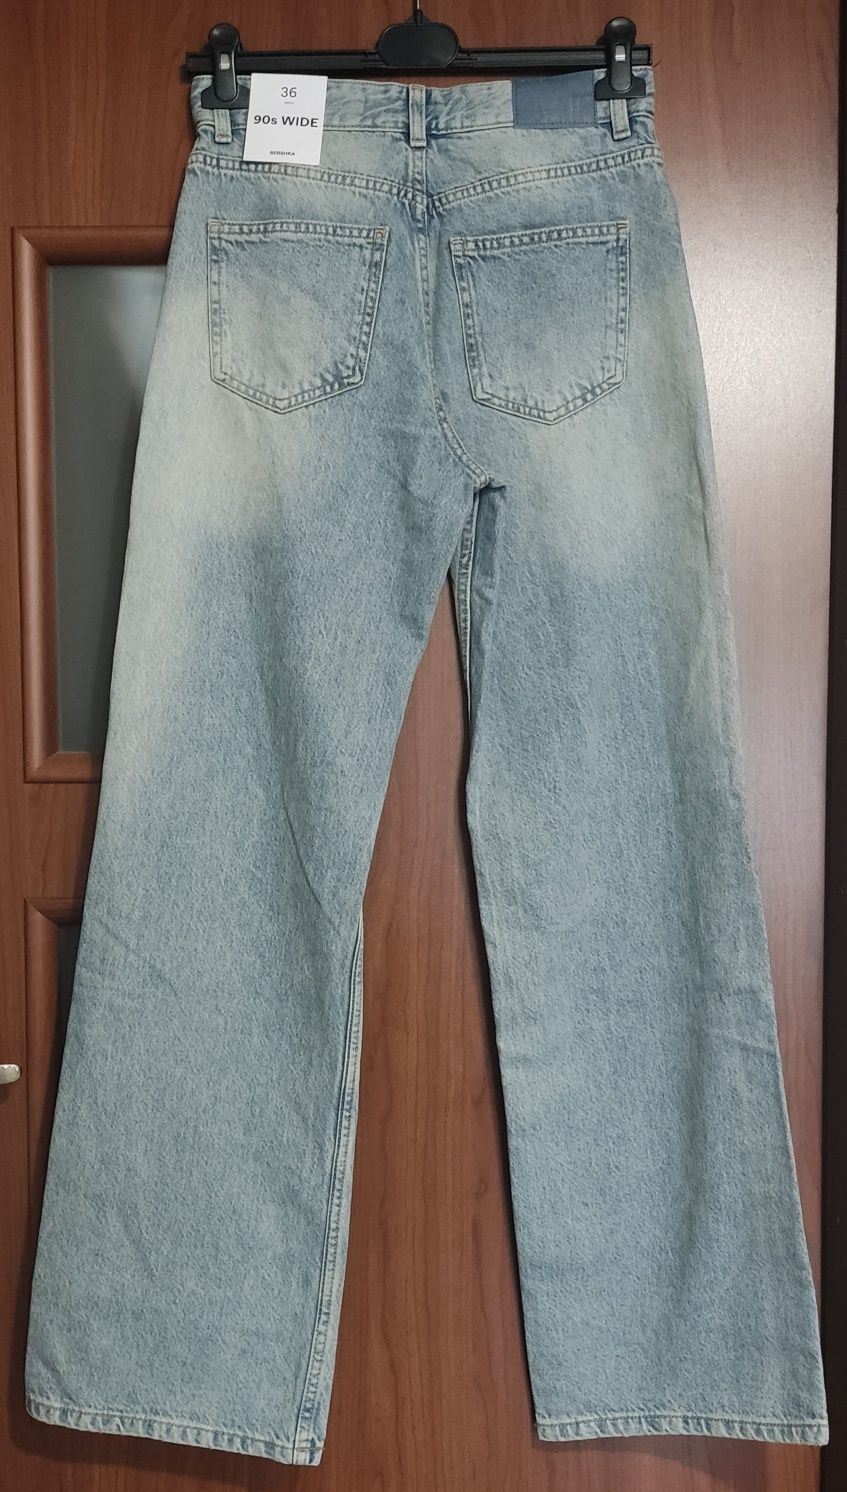 Bershka 90s wide jeans